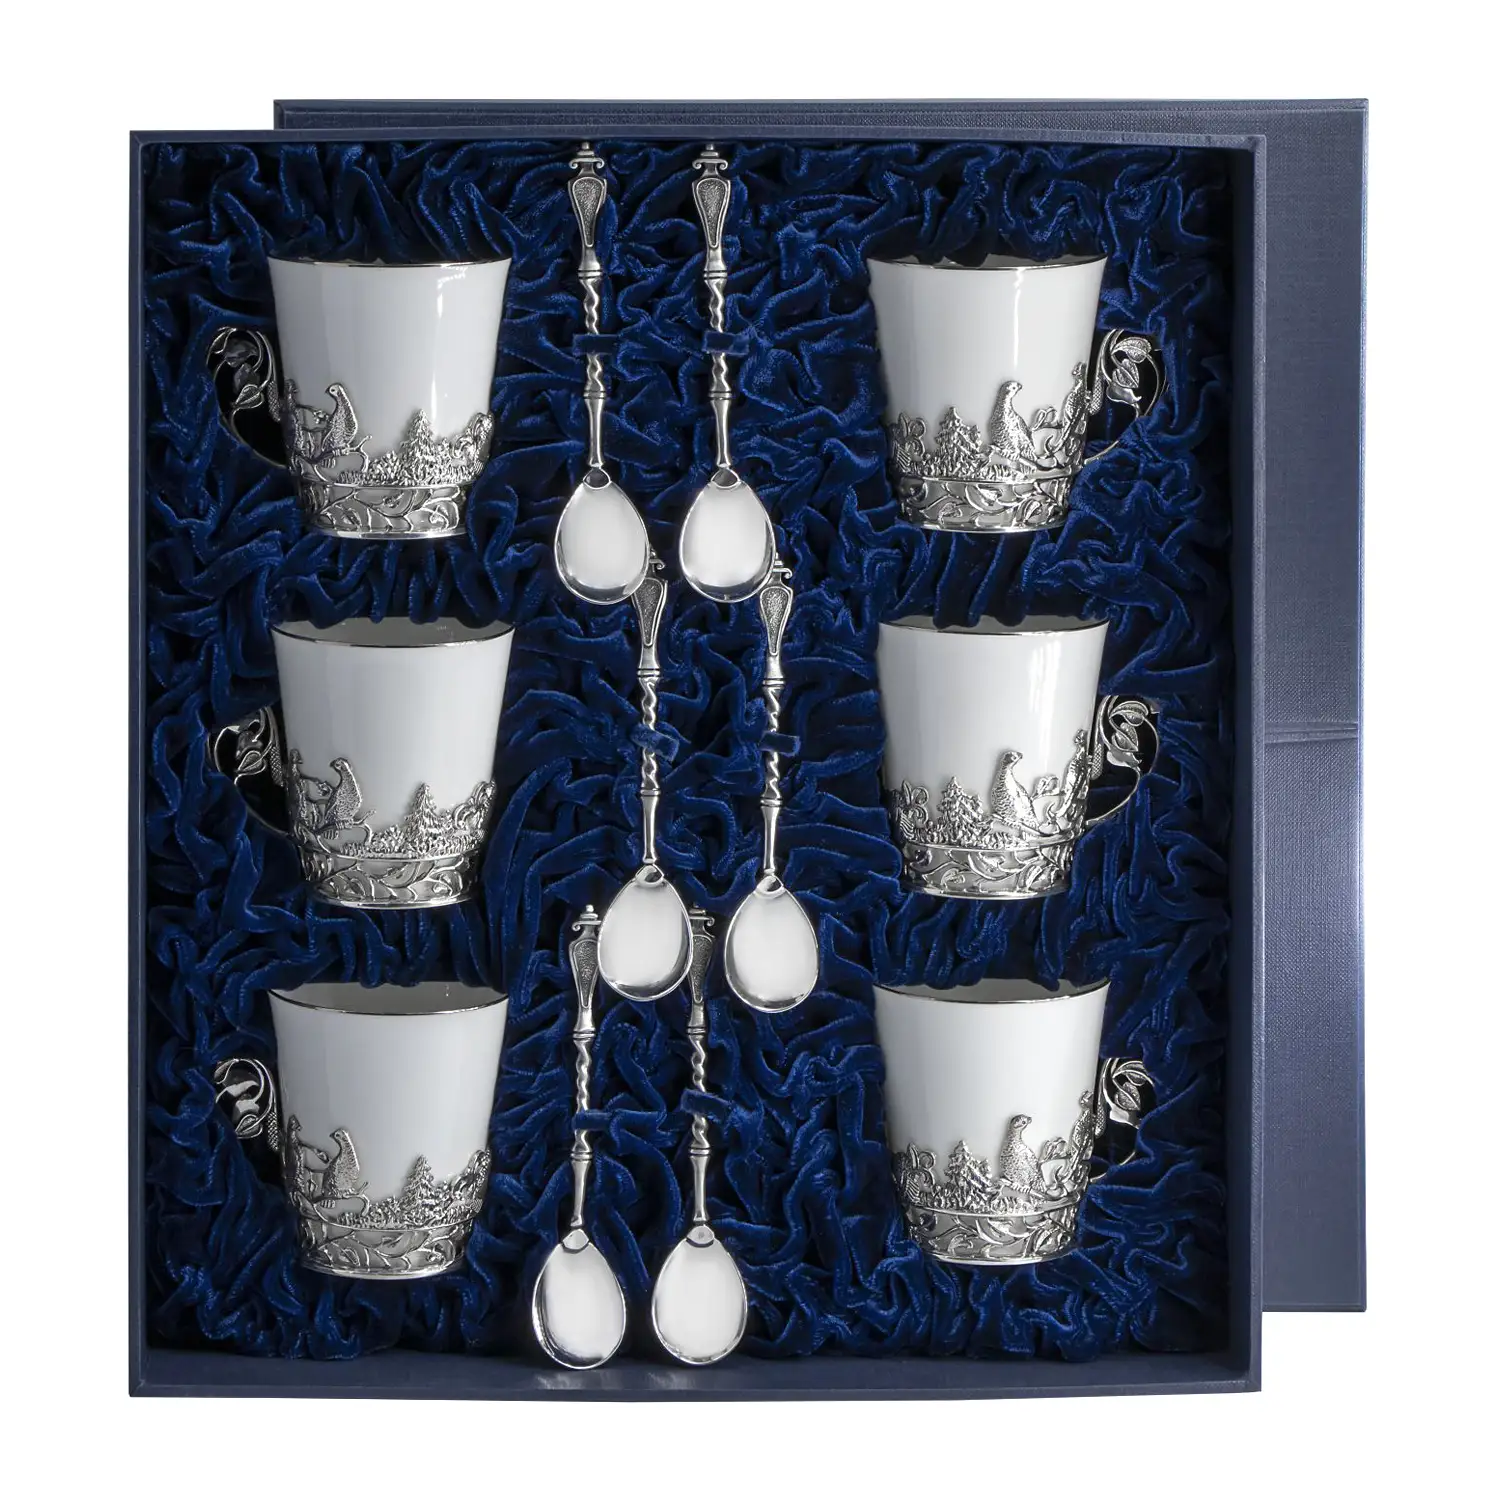 Набор чайных чашек Тетерев: ложка, чашка (Серебро 925) набор чайных чашек симфония ложка чашка серебро 925